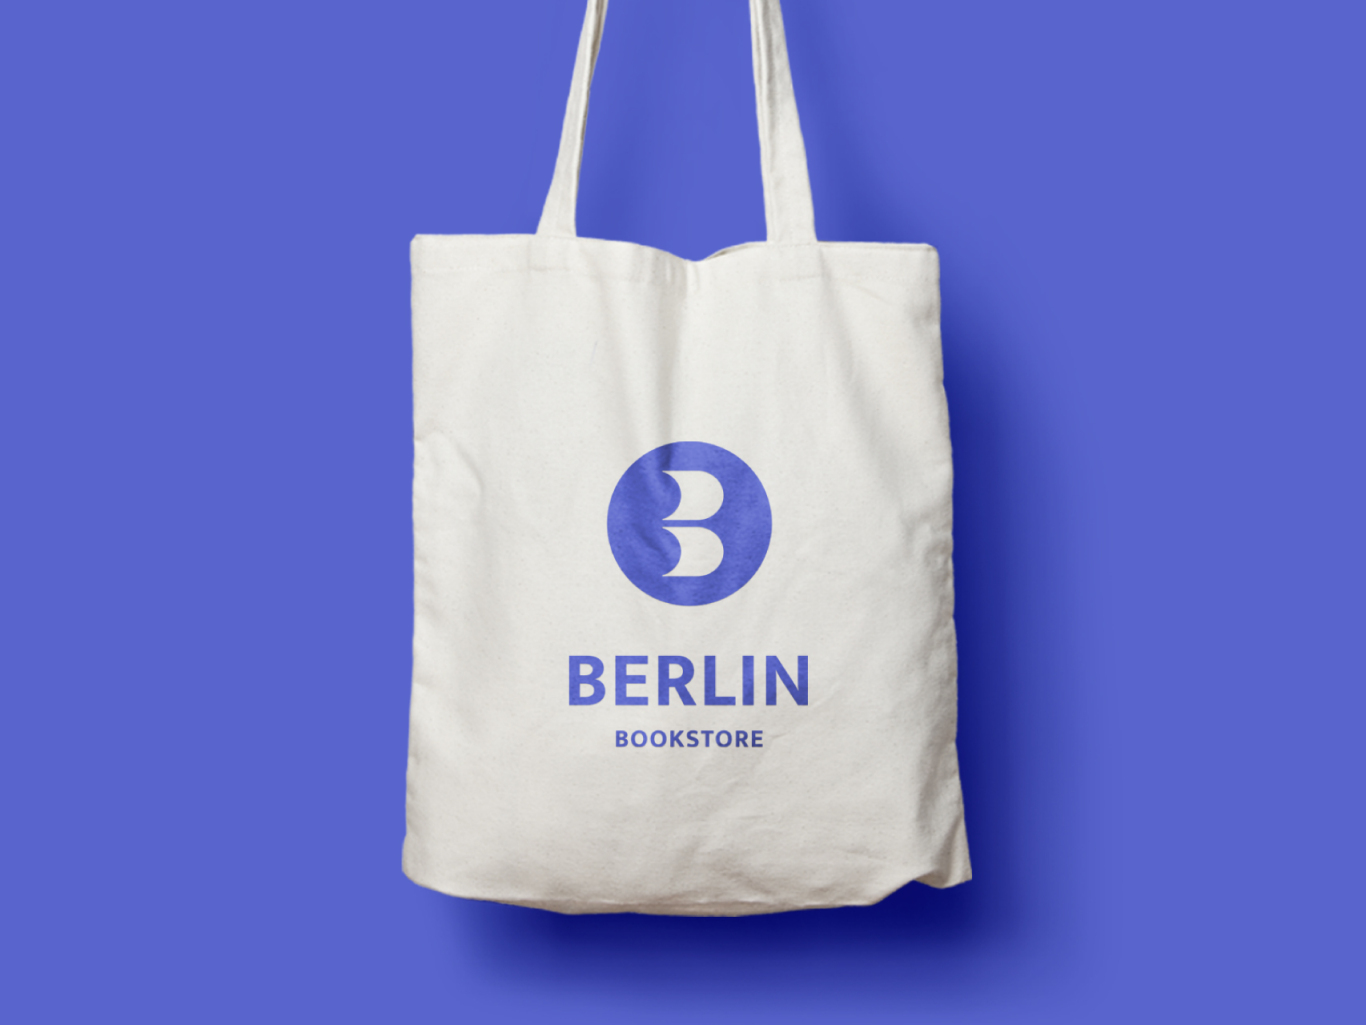 Berlin书店logo设计图2